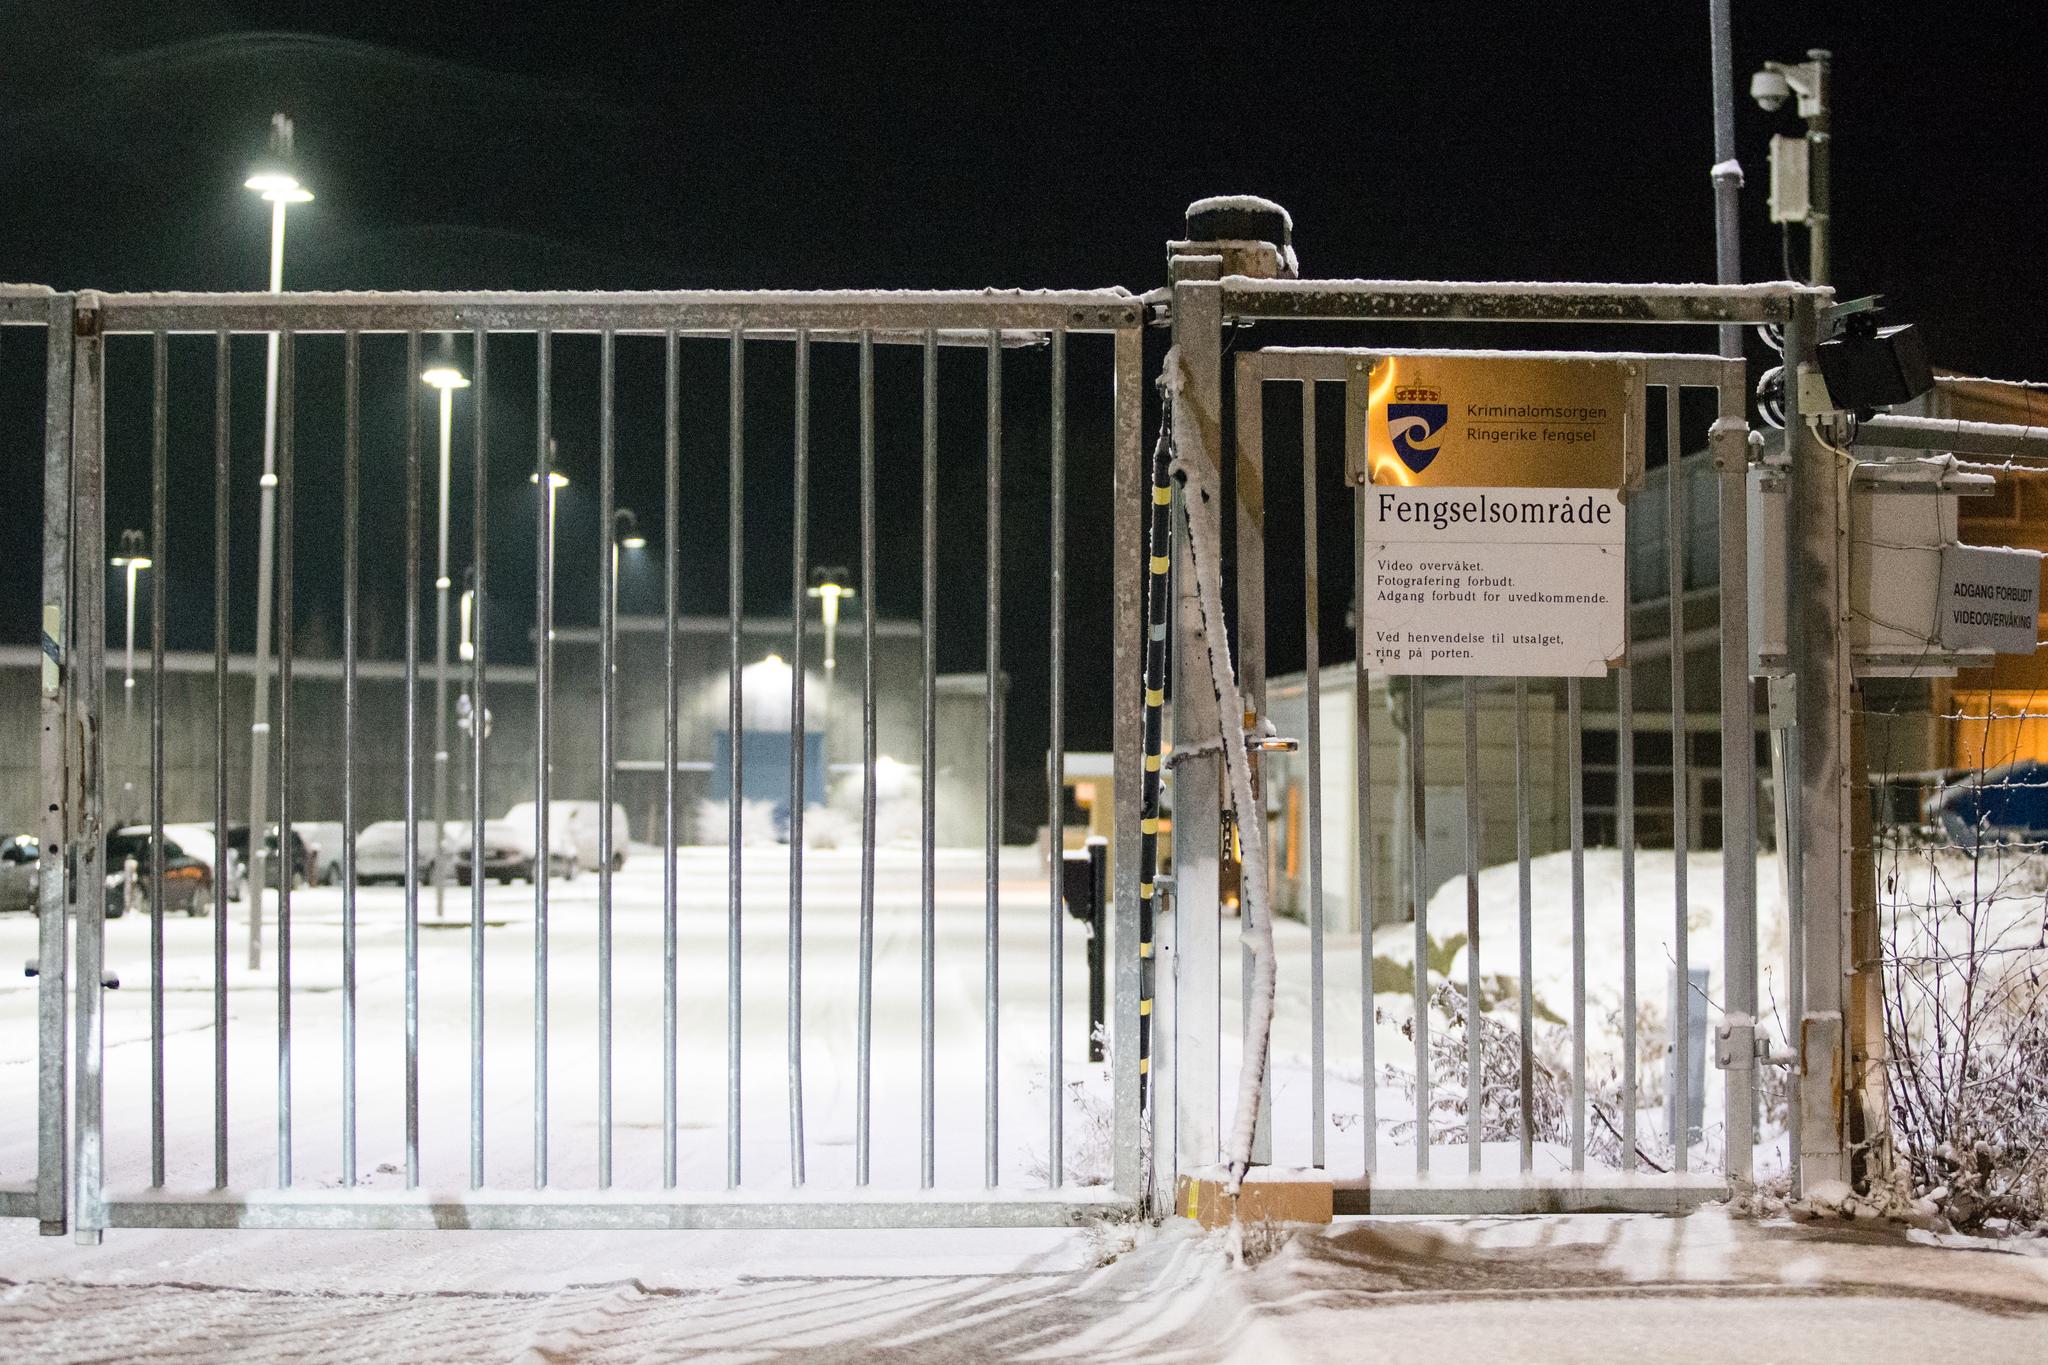 Politiet mottok meldingen om drapet i Ringerike fengsel klokken 13.14 lørdag. Etter det Aftenposten erfarer skal hendelsen ha skjedd i en fellesskapsavdeling i fengselet.